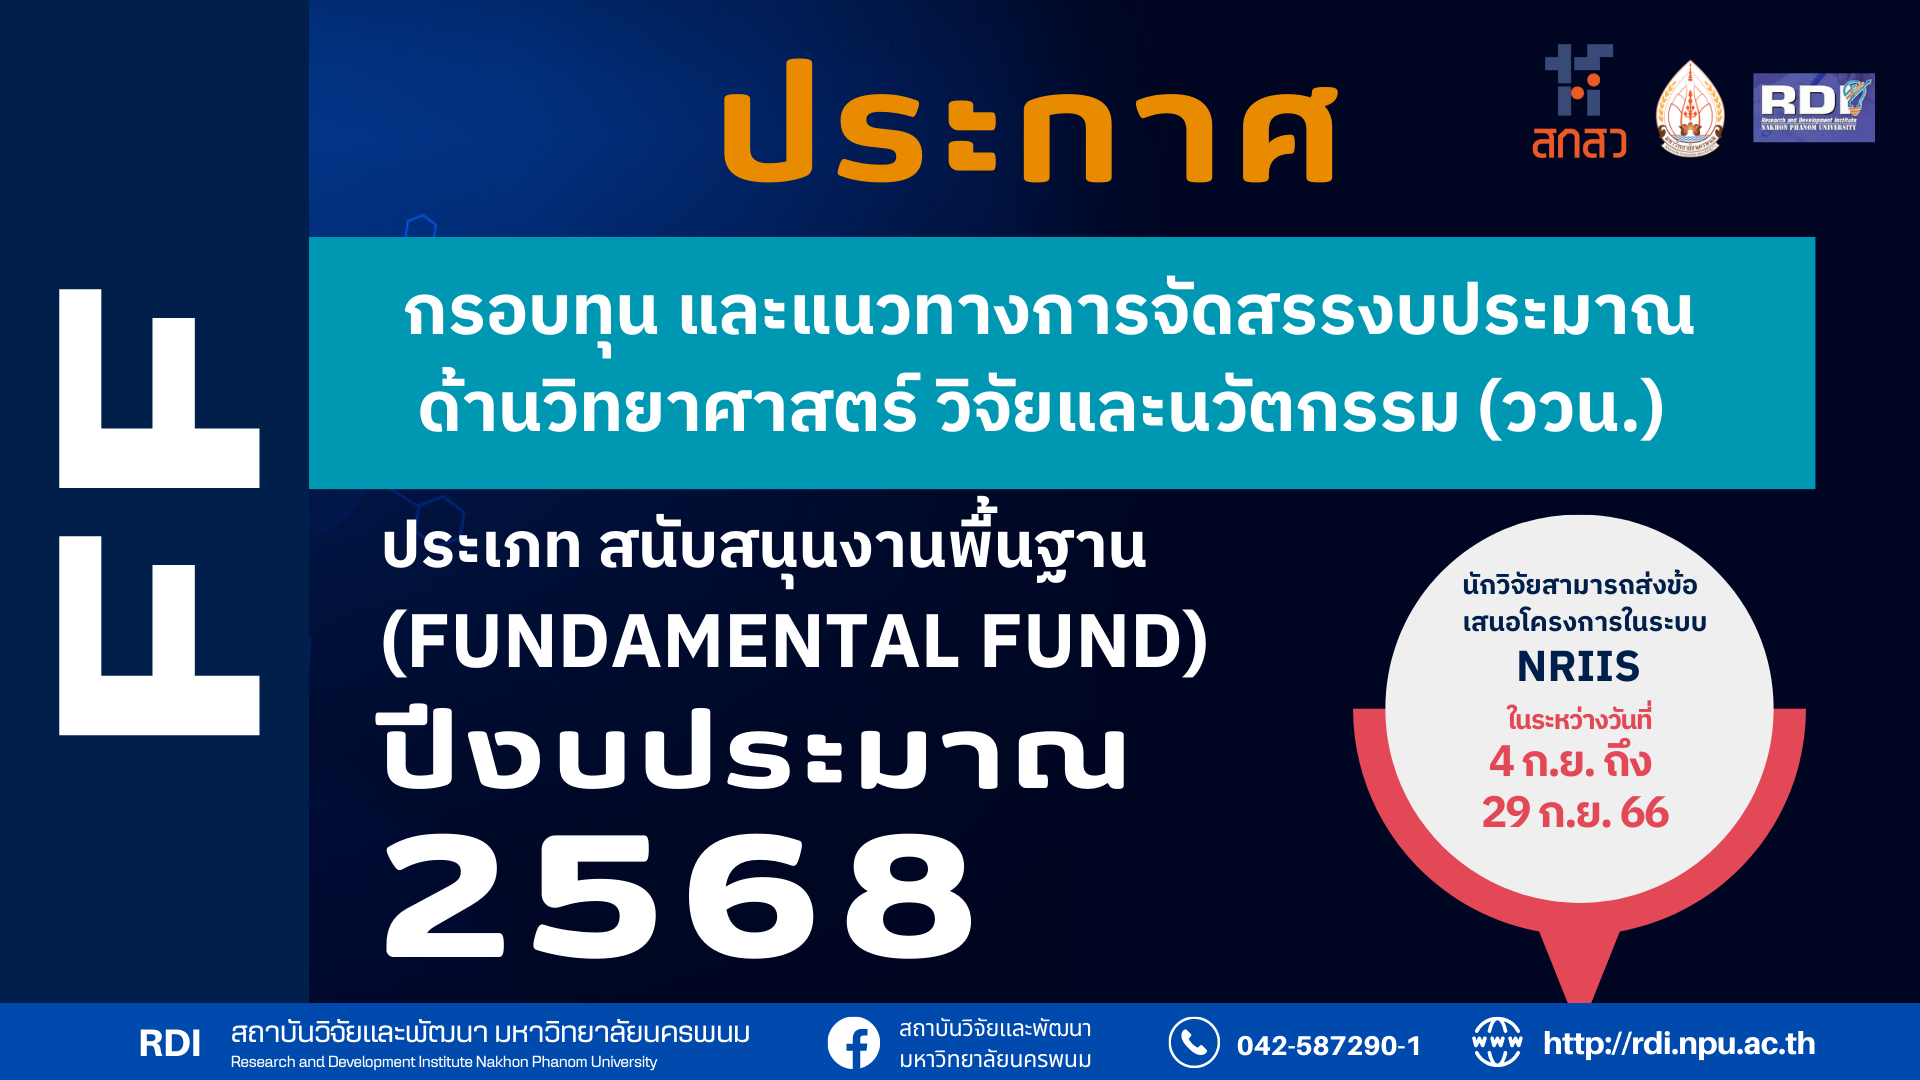 ประกาศกรอบทุน และแนวทางการจัดสรรงบประมาณด้านวิทยาศาสตร์ วิจัยและนวัตกรรม (ววน.) ประเภท สนับสนุนงานพื้นฐาน (Fundamental Fund) ประจำปีงบประมาณ พ.ศ. 2568